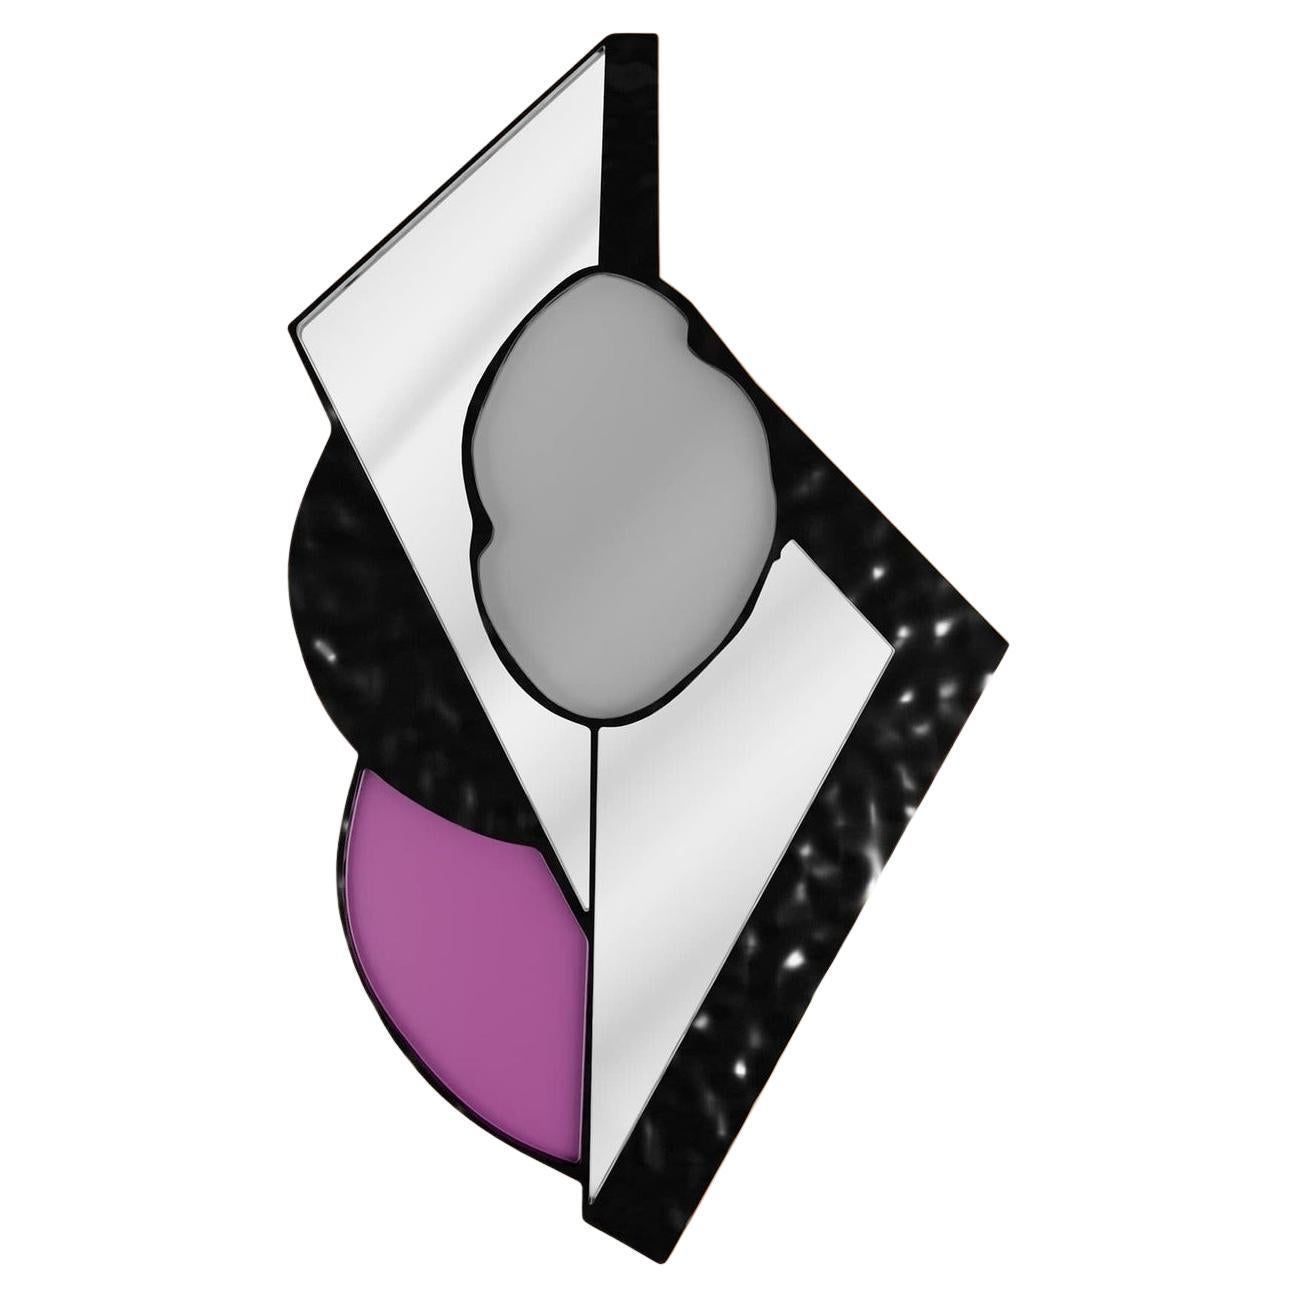 The Modern Brutalist Geometric Shaped Mirror in Purple Lilac & Black Hammered Glass (Miroir géométrique moderne en verre violet lilas et noir martelé)